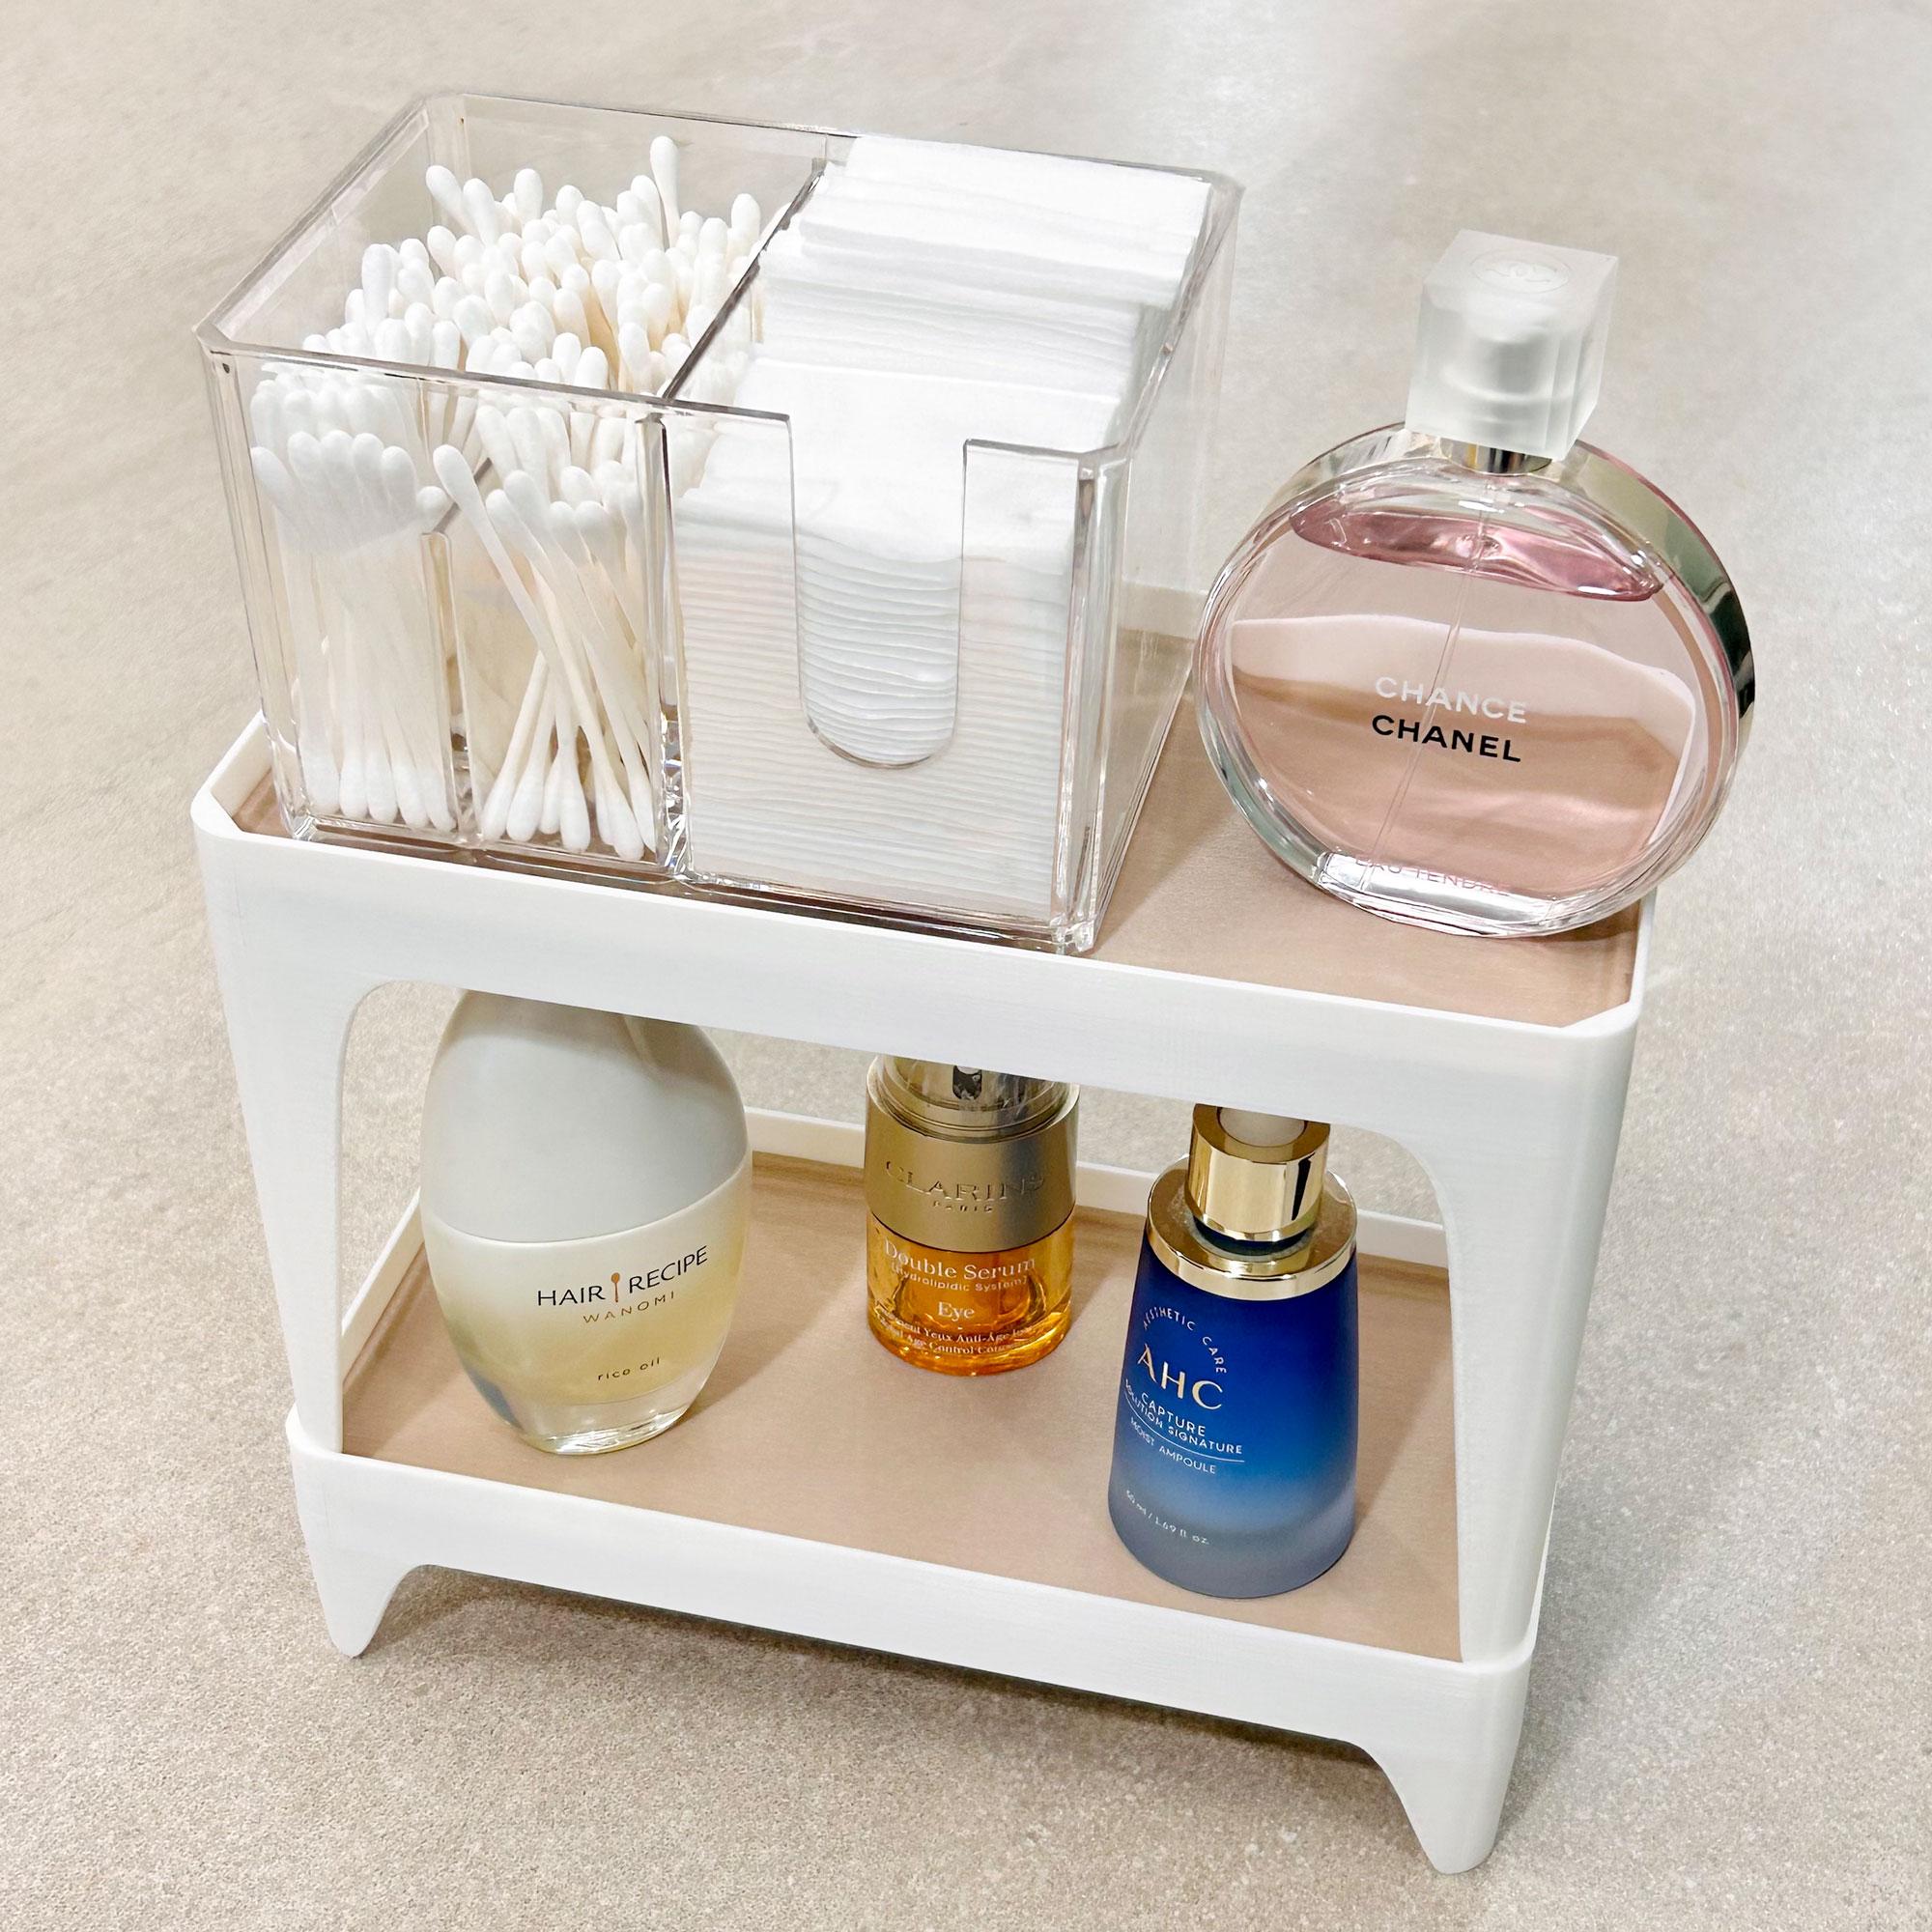 BUNK | Stackable shelves for bathroom & kitchen 3d model